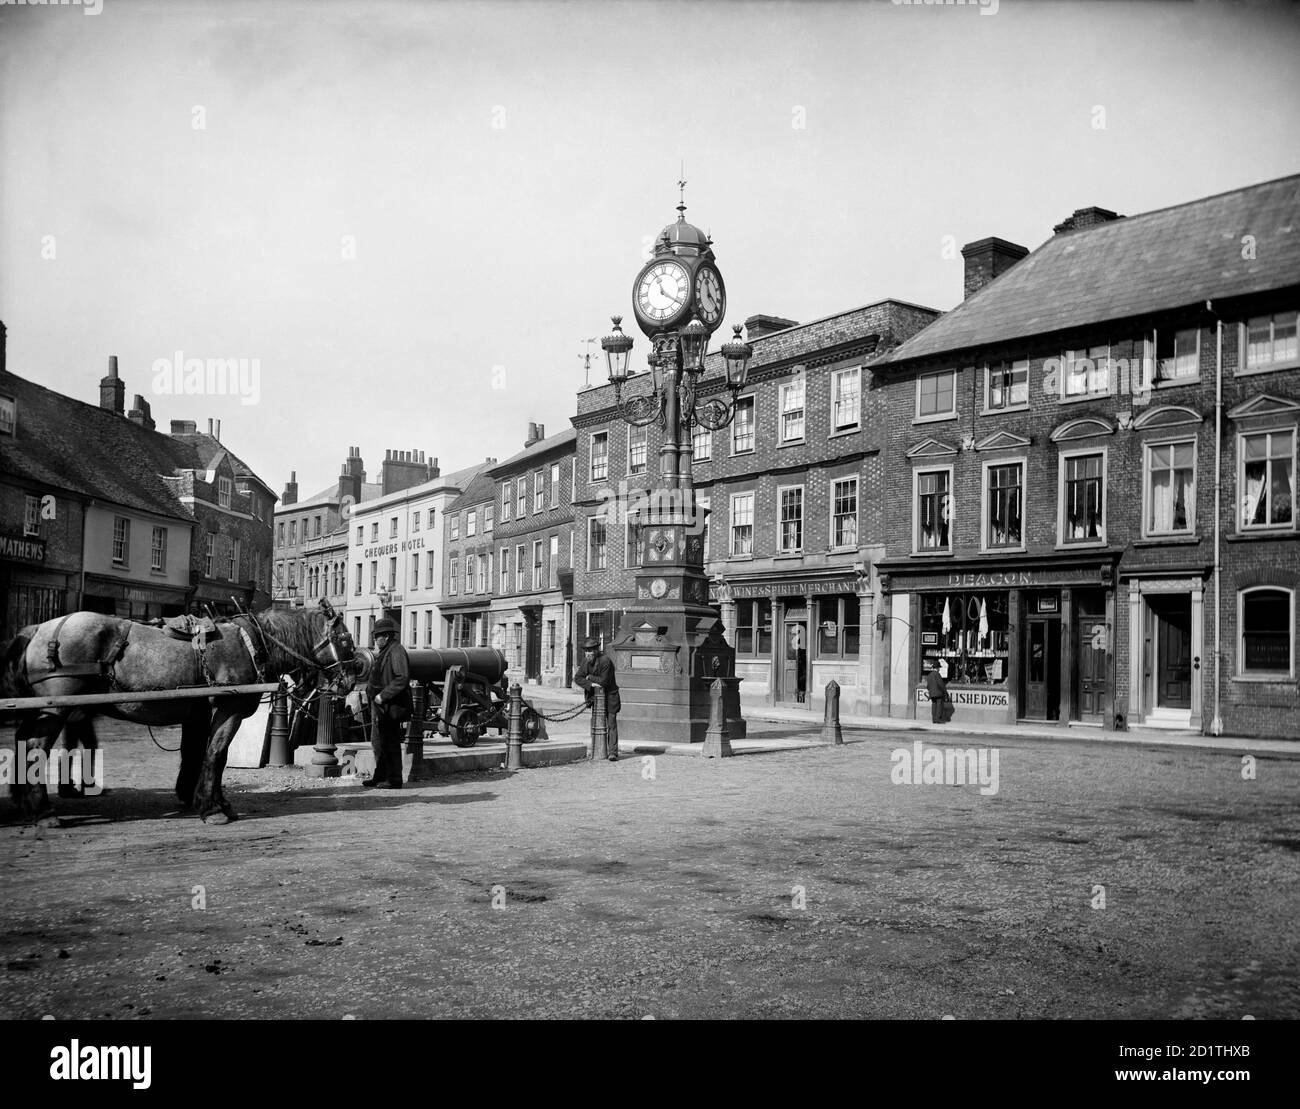 NEWBURY, Berkshire. Die Uhr, die an das Goldene Jubiläum der Königin Victoria (1887) erinnert, steht an der Dreiwegekreuzung der Straßen London und Bath in der Stadt. Fotografiert 1890 von Henry Taunt. Stockfoto